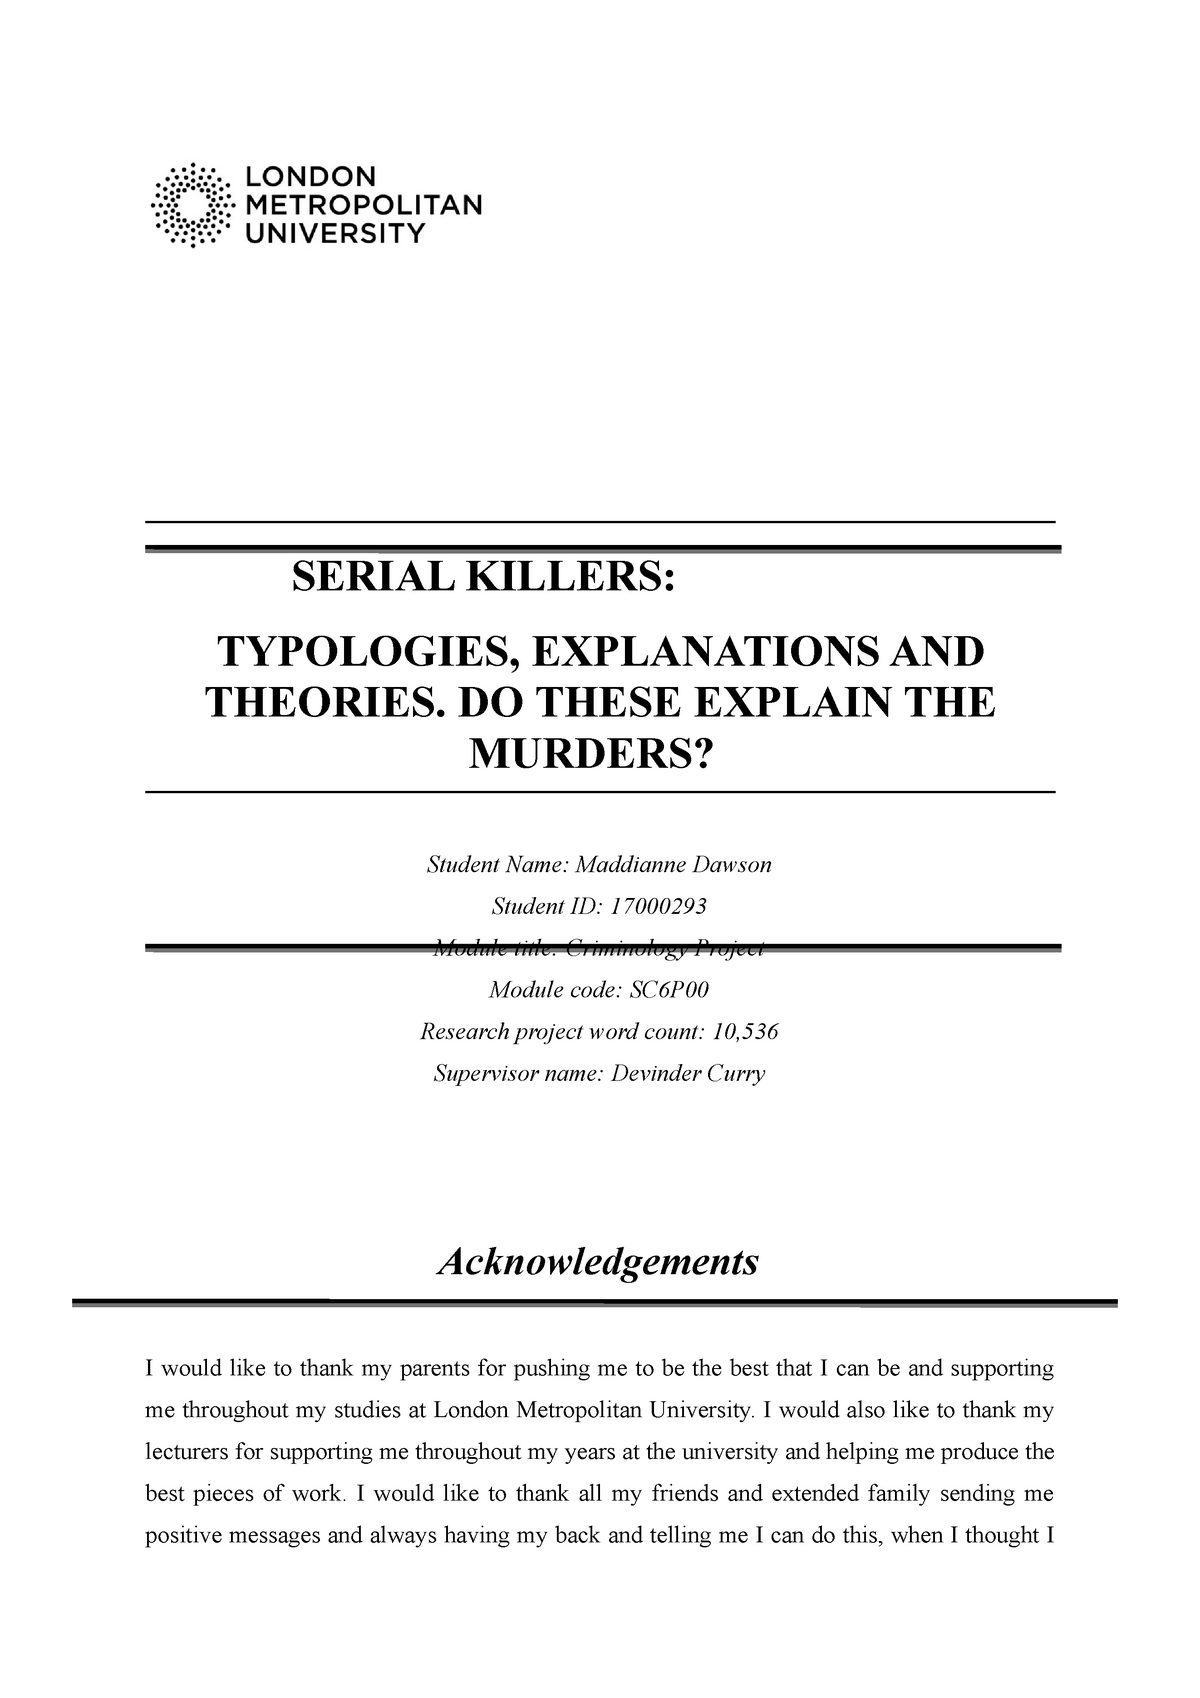 dissertation ideas on serial killers